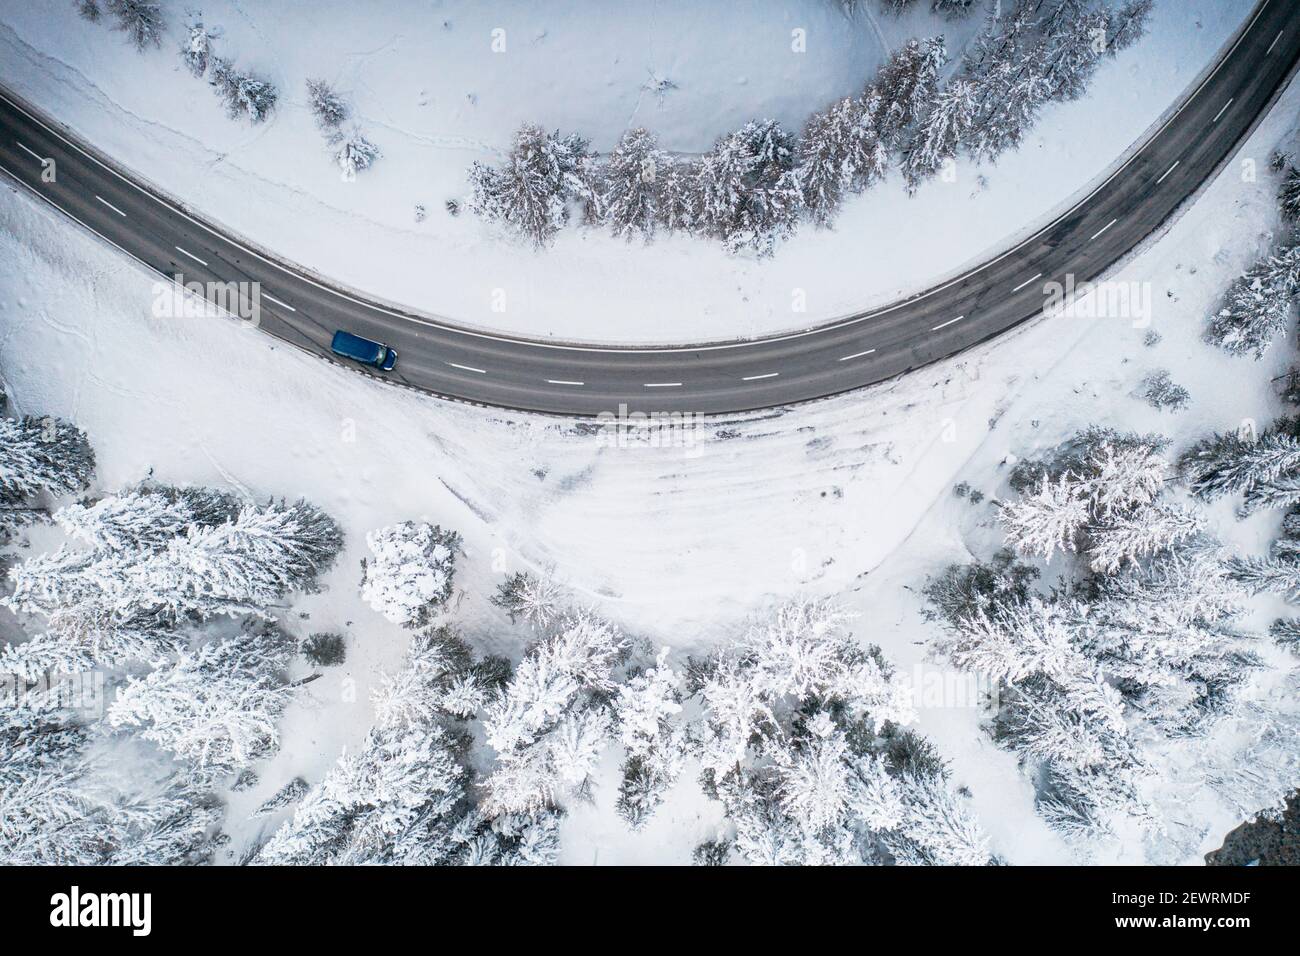 Voiture roulant dans les virages sur la route de montagne enneigée d'en haut, Suisse, Europe Banque D'Images